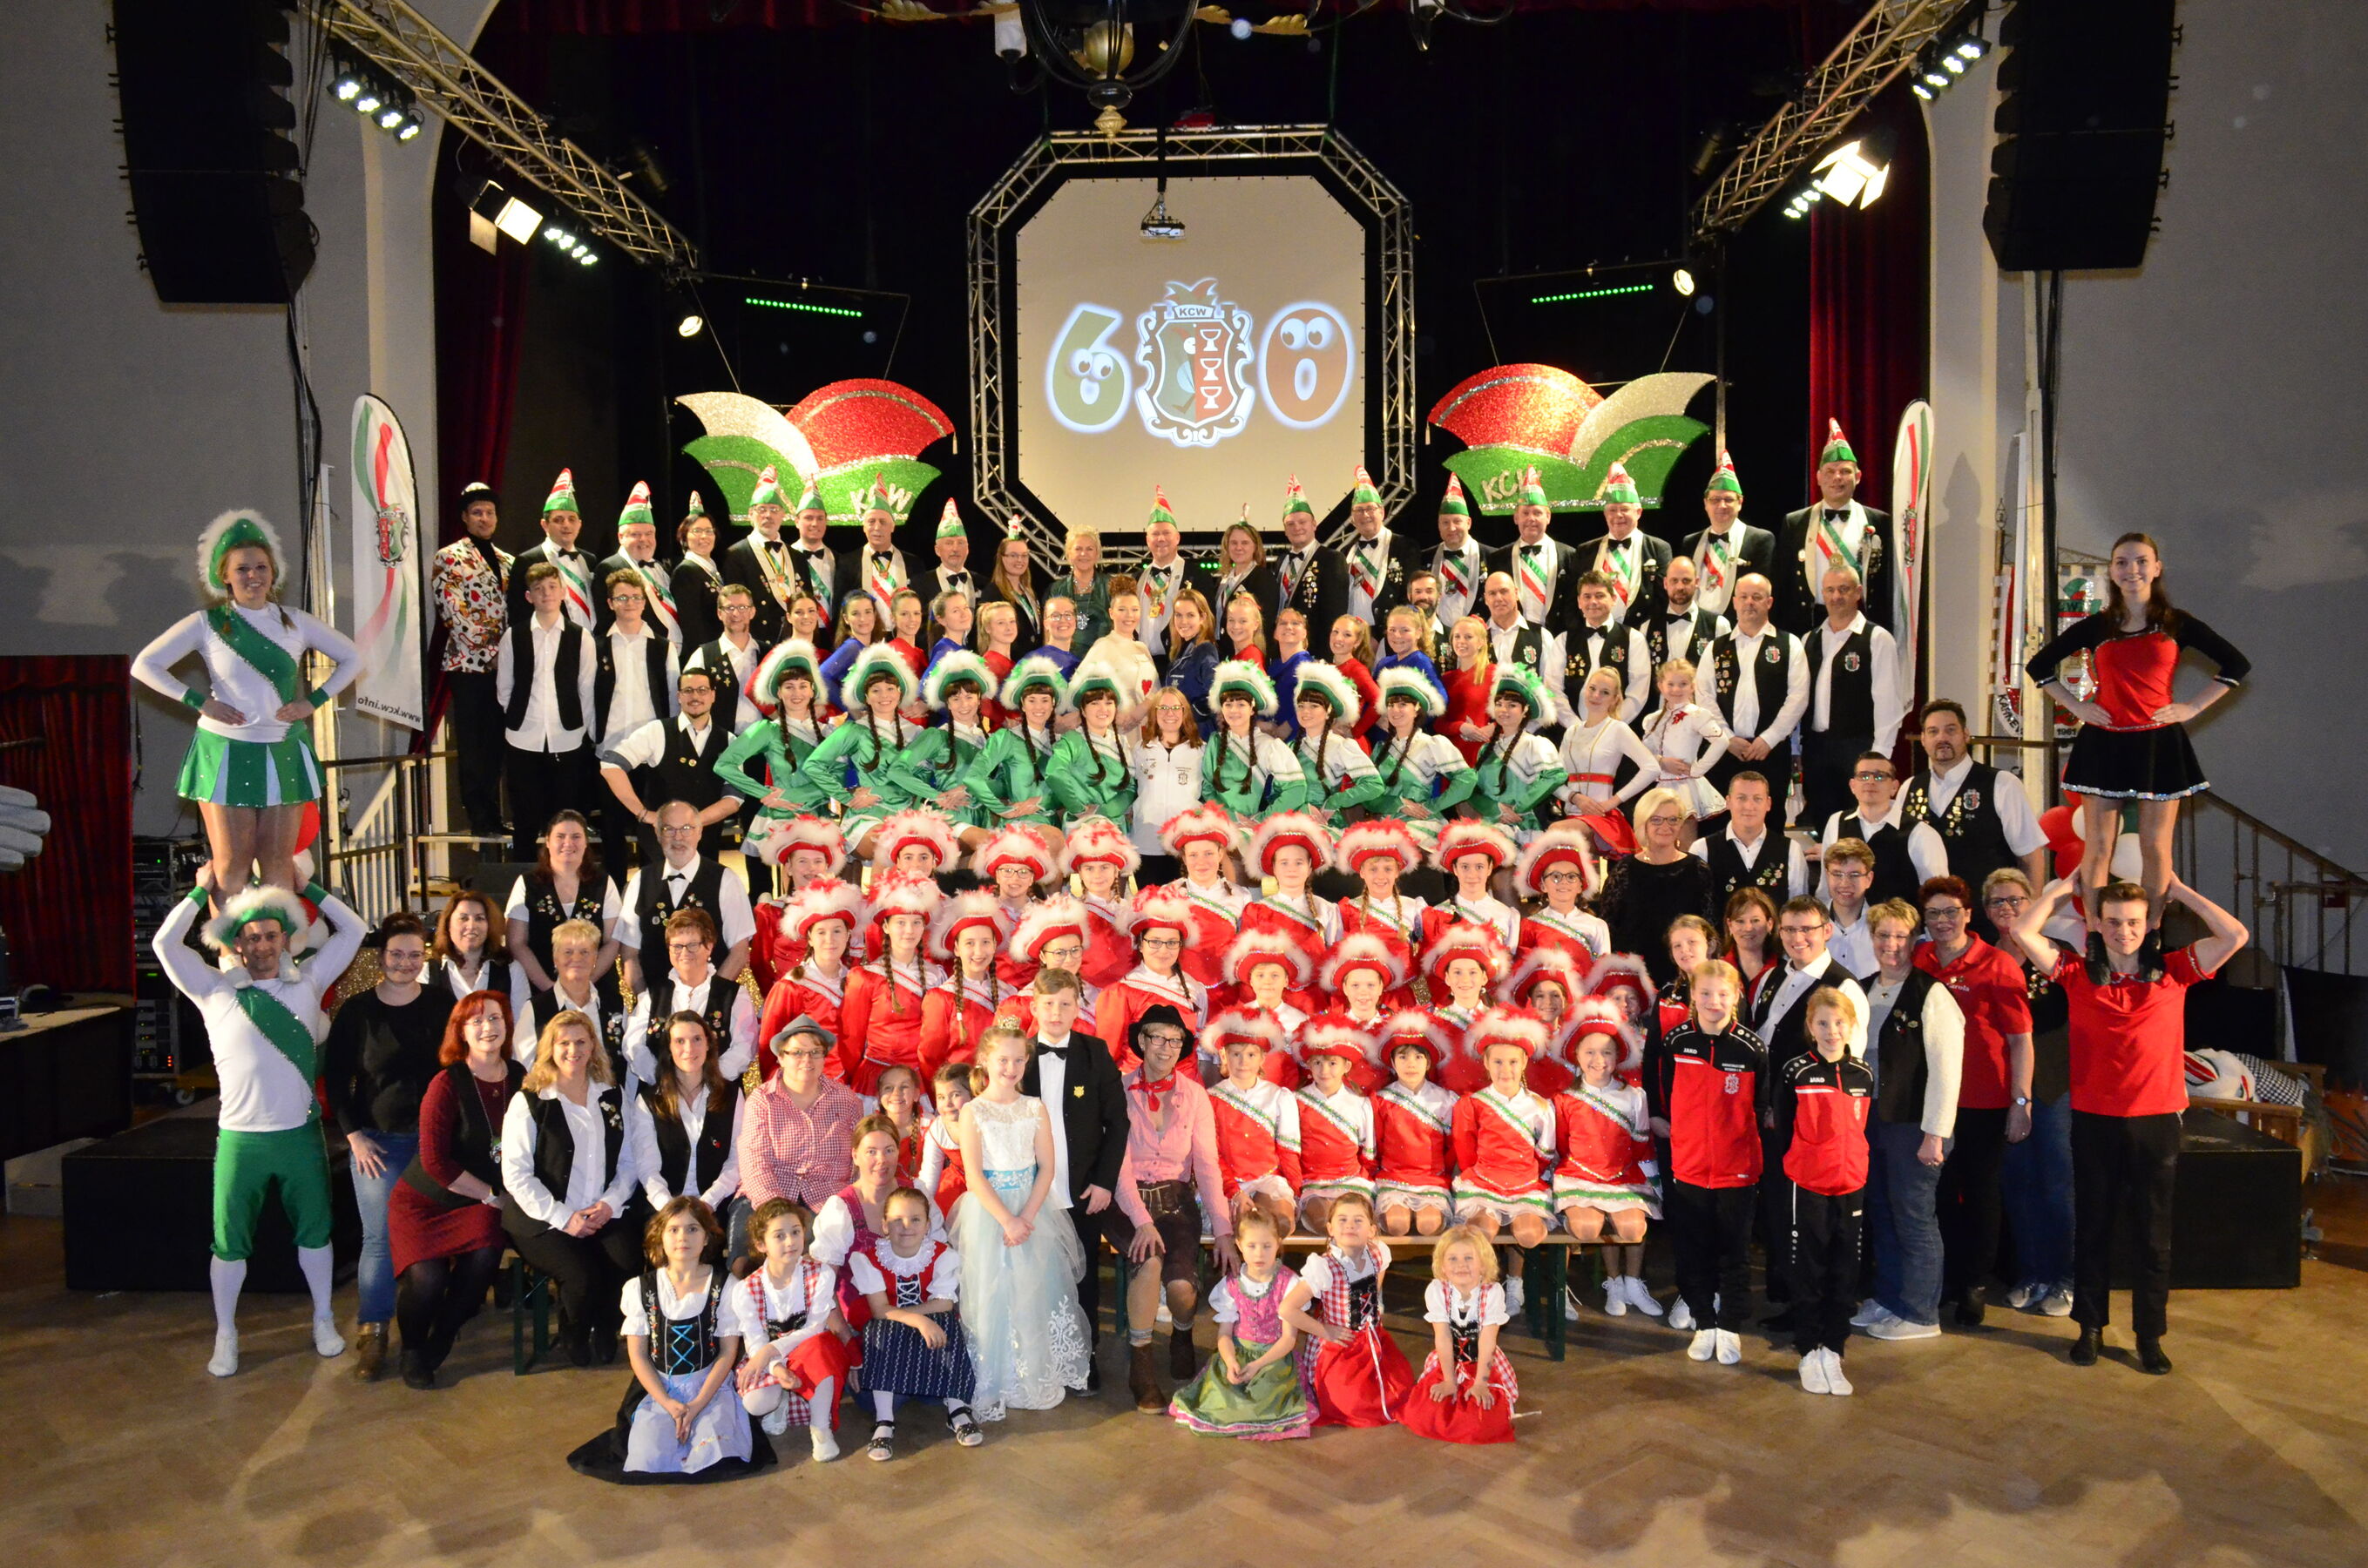 Karnevals-Gala mit Gastauftritt aus Siegburg, Foto: Julia Seiler, Lizenz: KCW e.V.